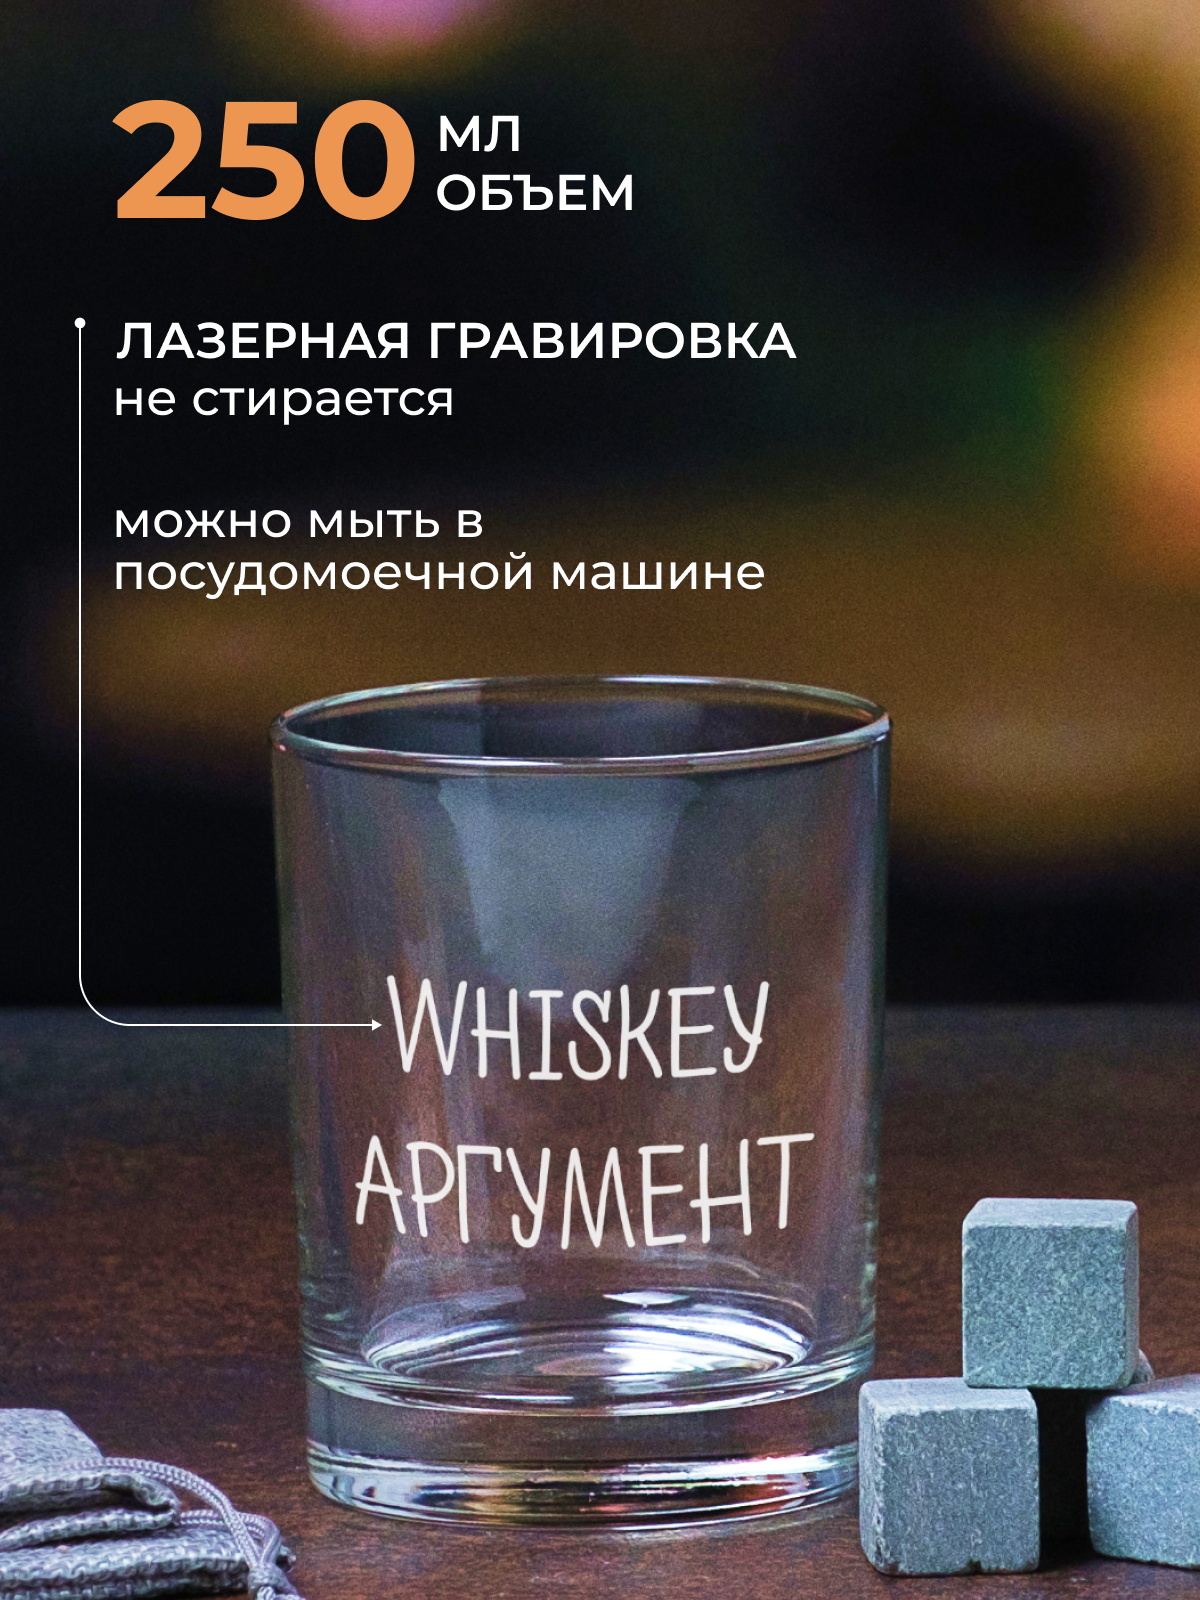 Подарочный набор /бокал для виски/коньяка/бренди "Воли выдержки терпения" надписью "Whiskey аргумент" Wood Bank с гравировкой